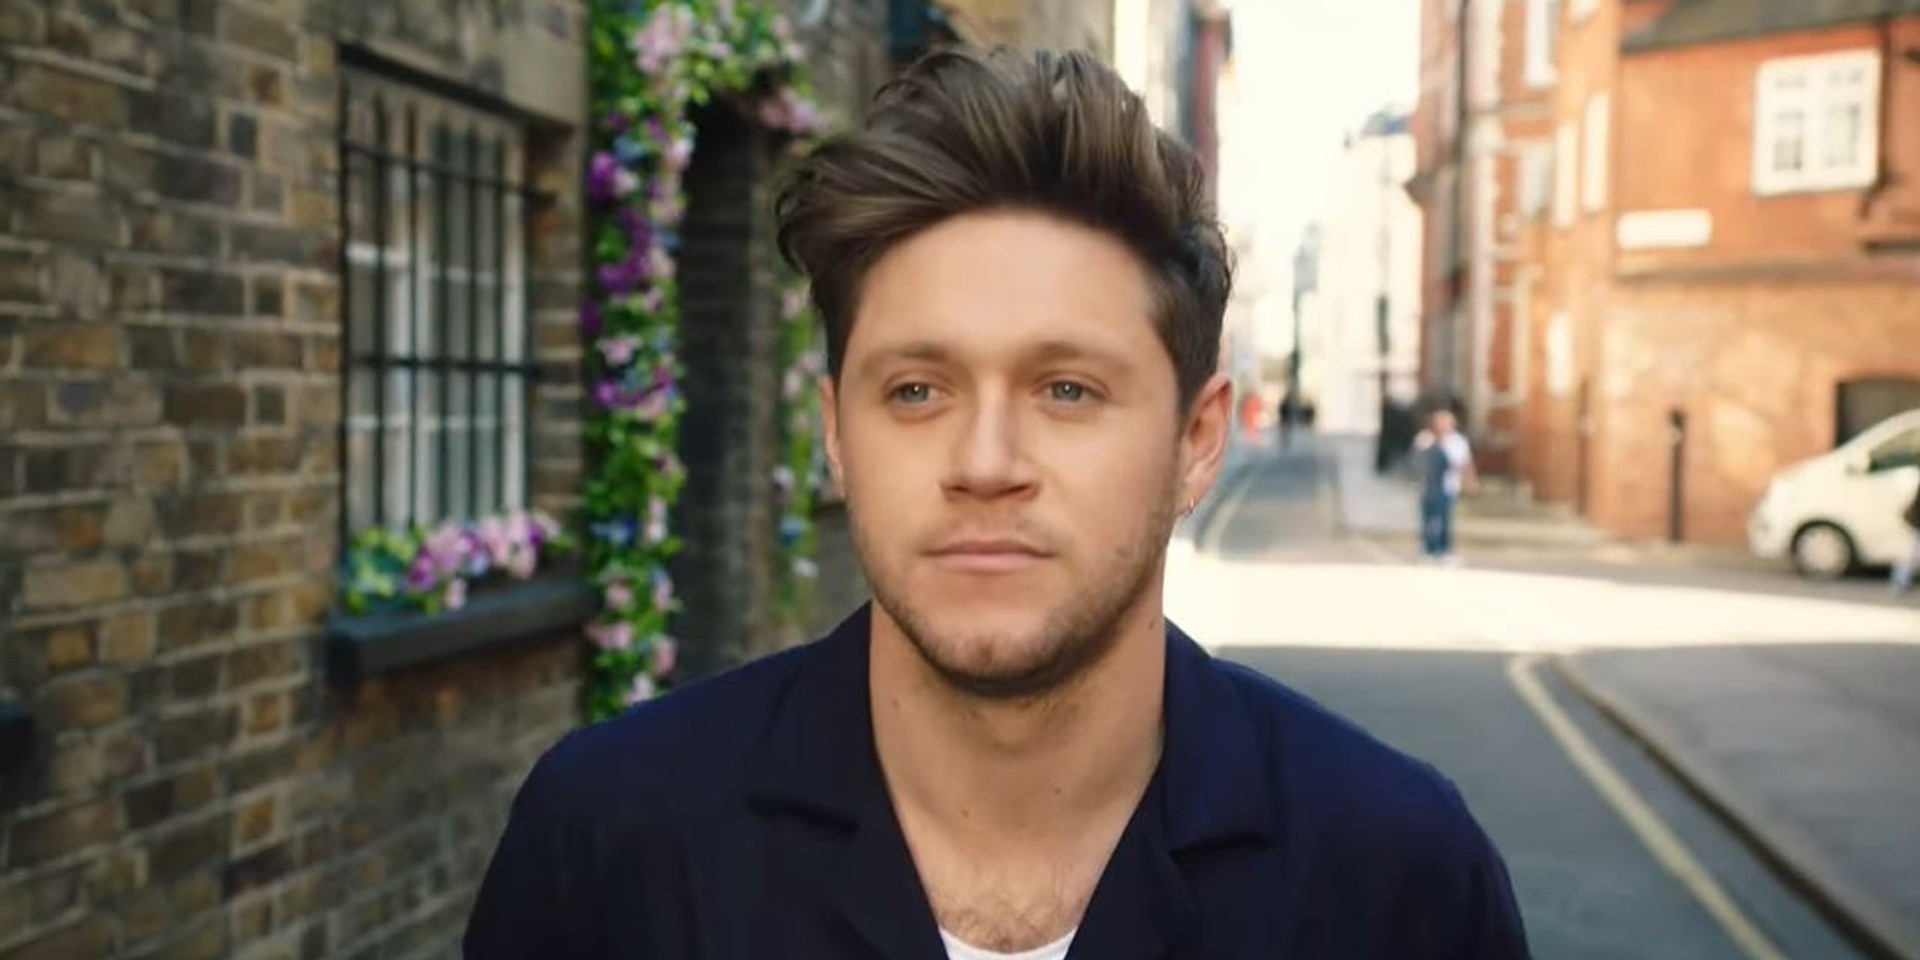 Niall Horan returns with playful new single 'Nice to Meet Ya' – watch